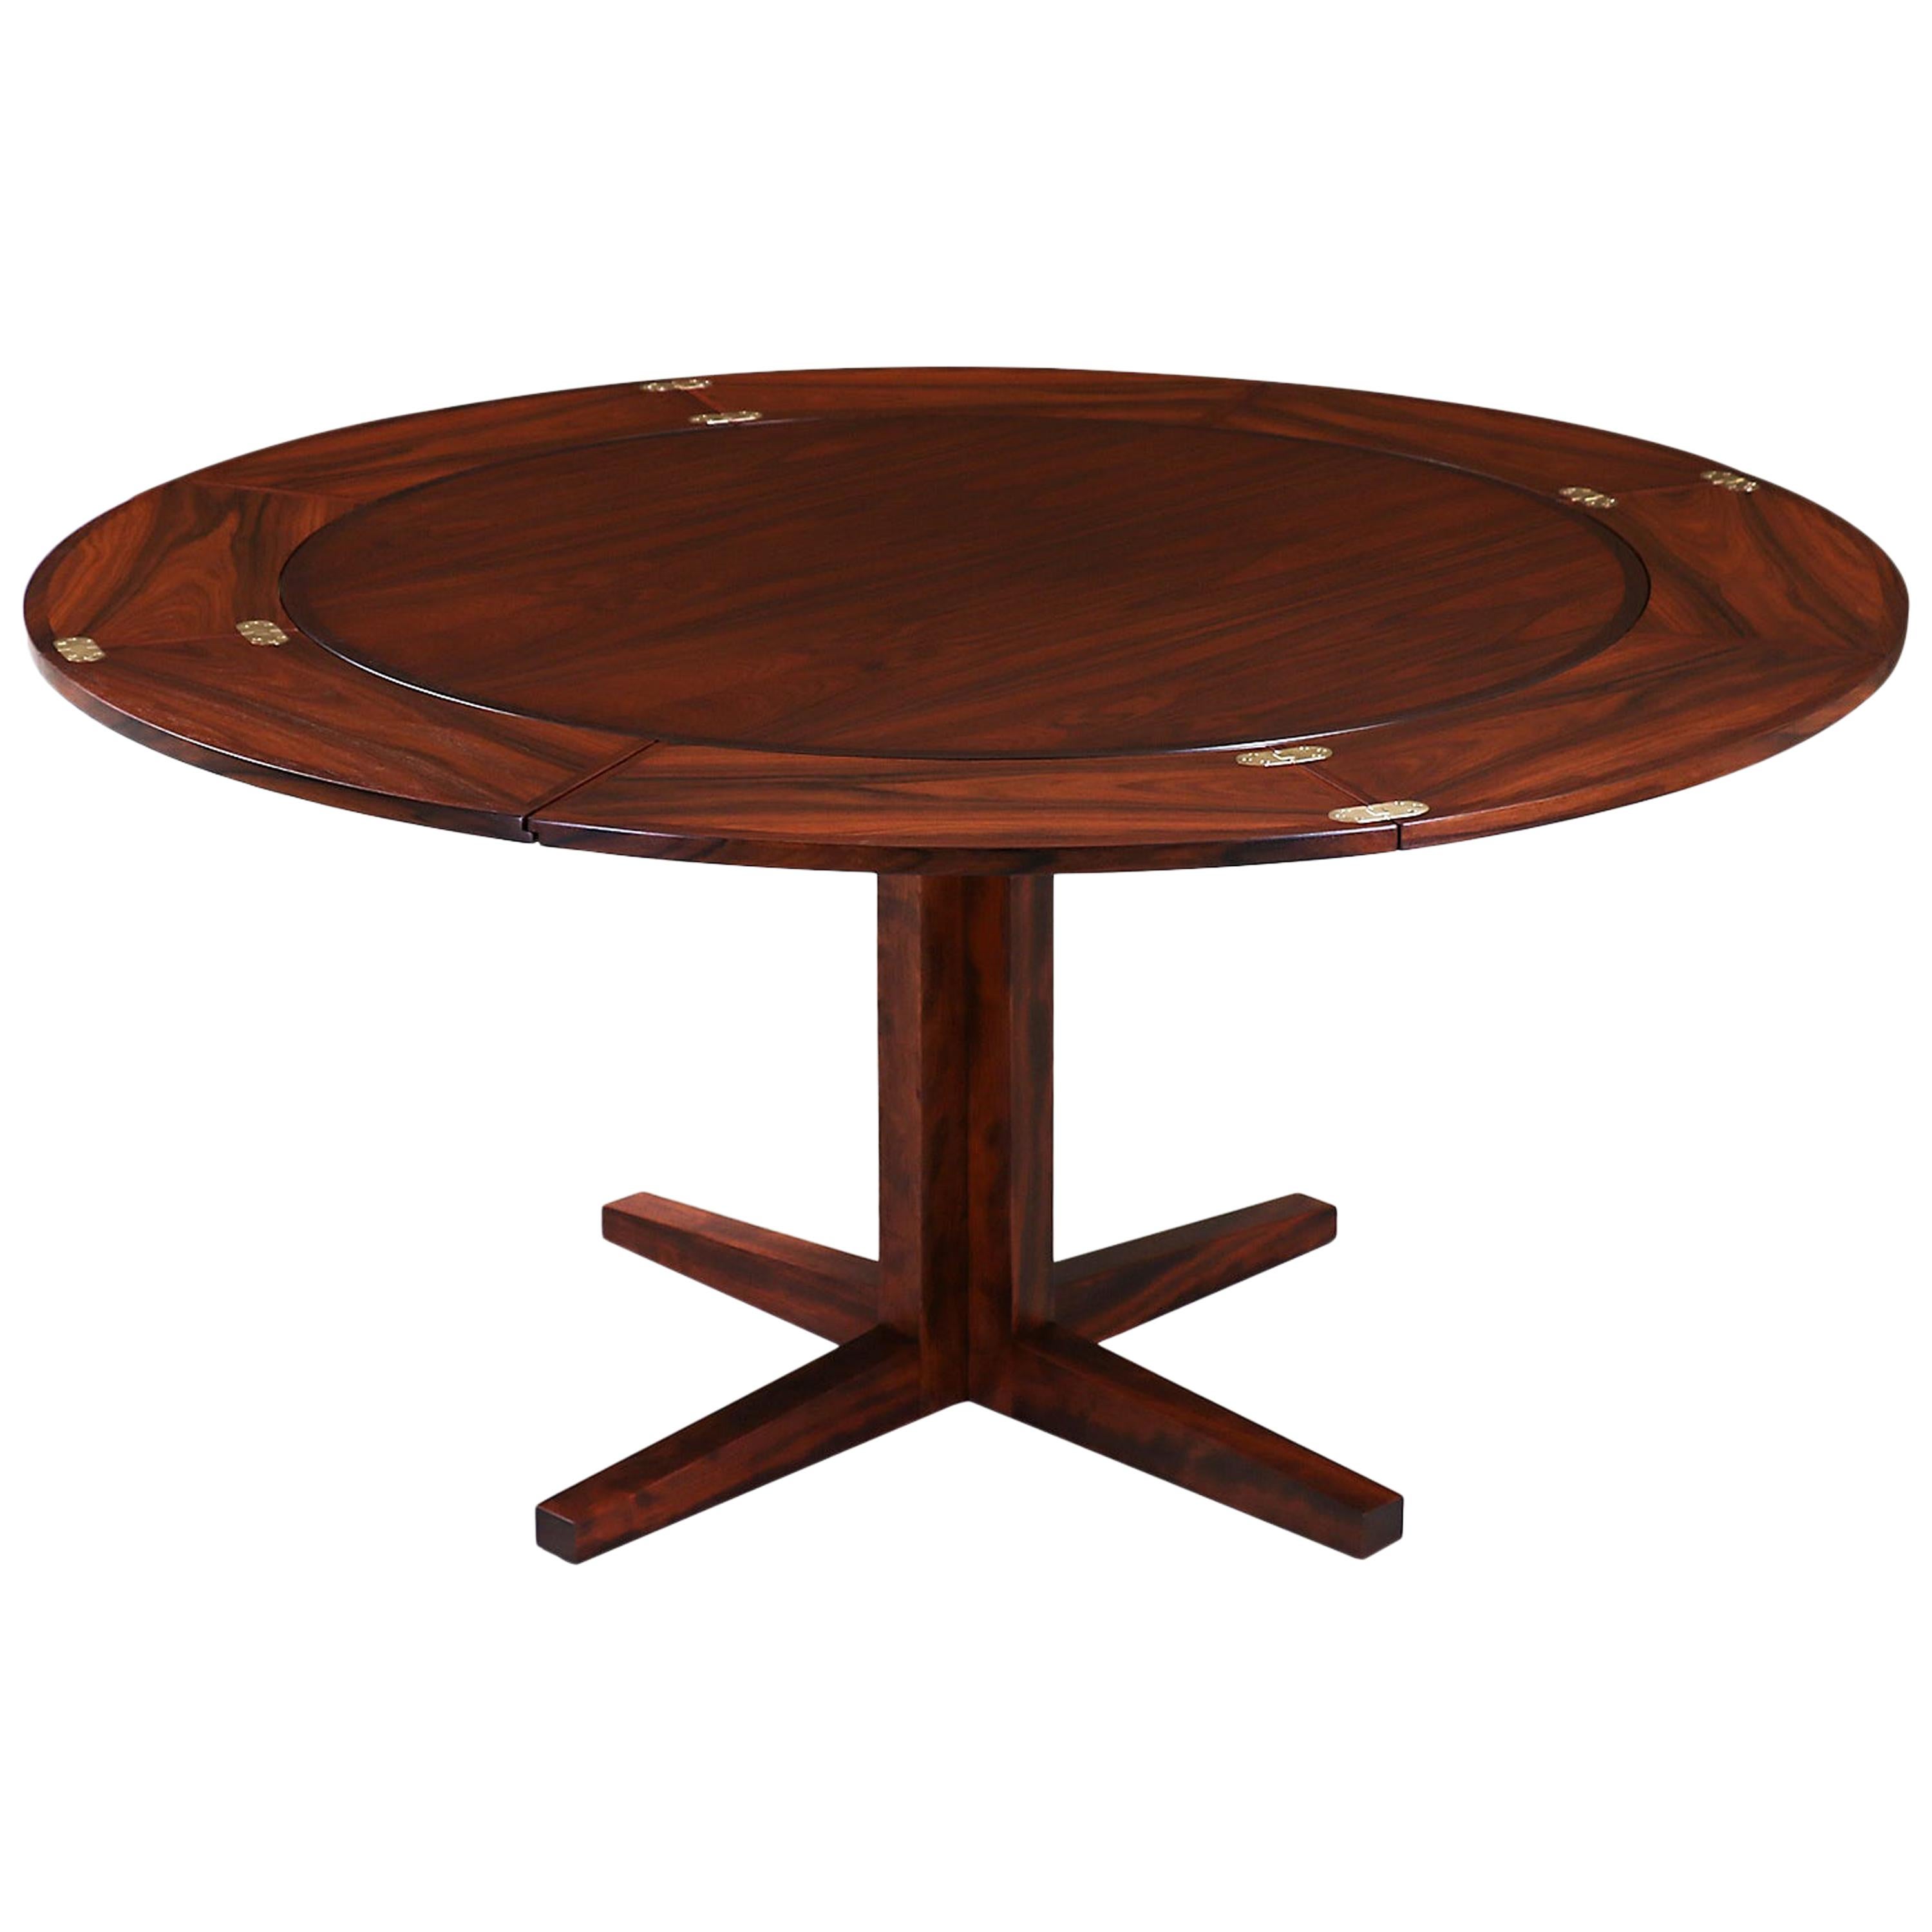 Danish Modern “Flip-Flap” Rosewood Dining Table by Dyrlund